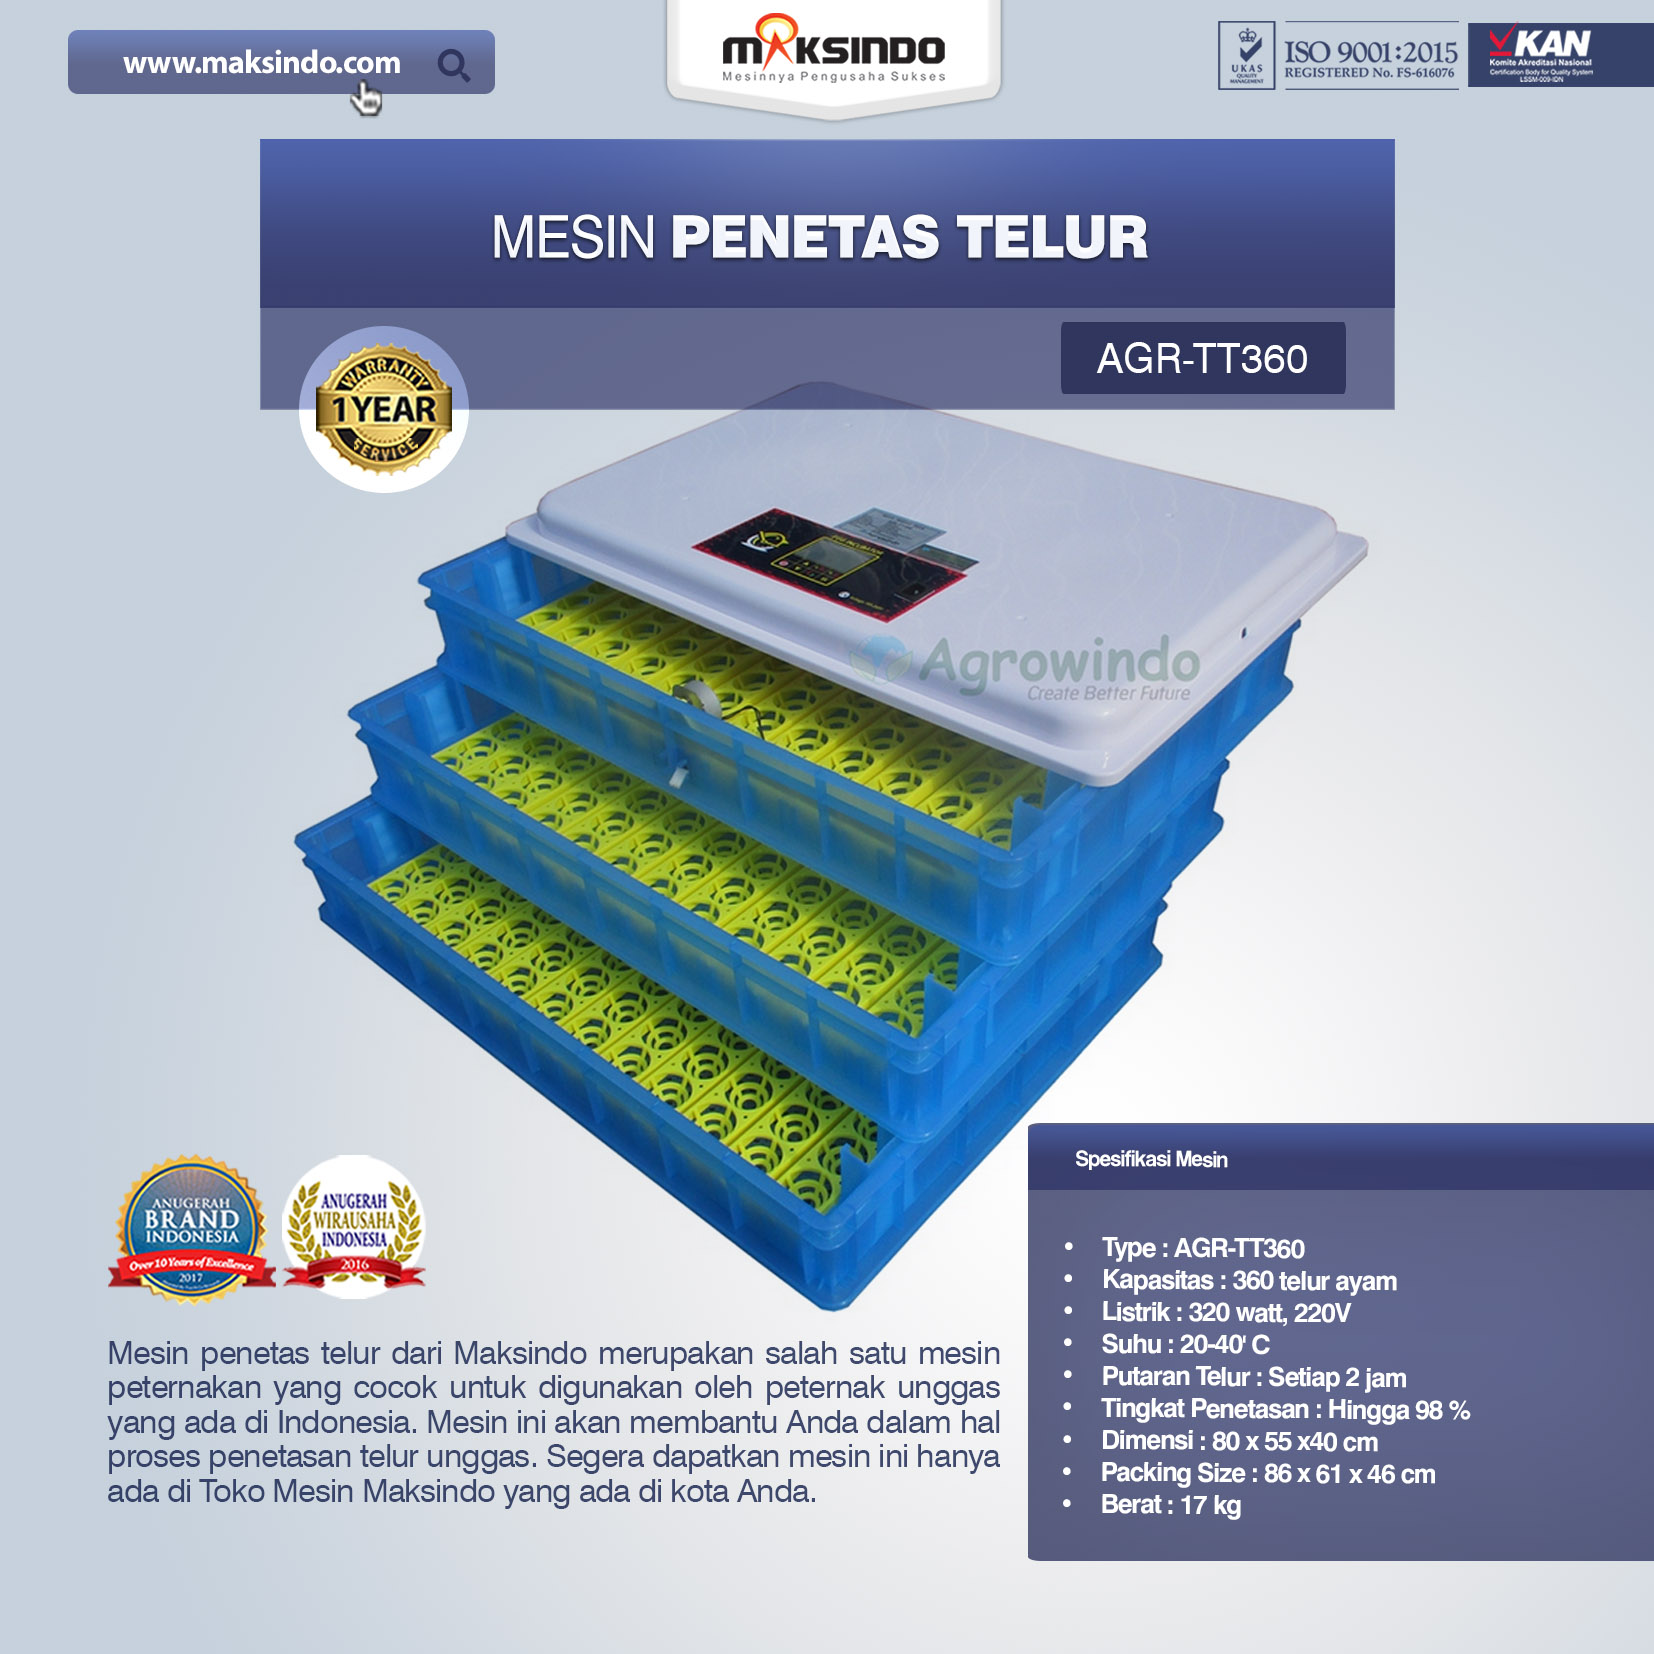 Jual Mesin Penetas Telur AGR-TT360 Di Bali